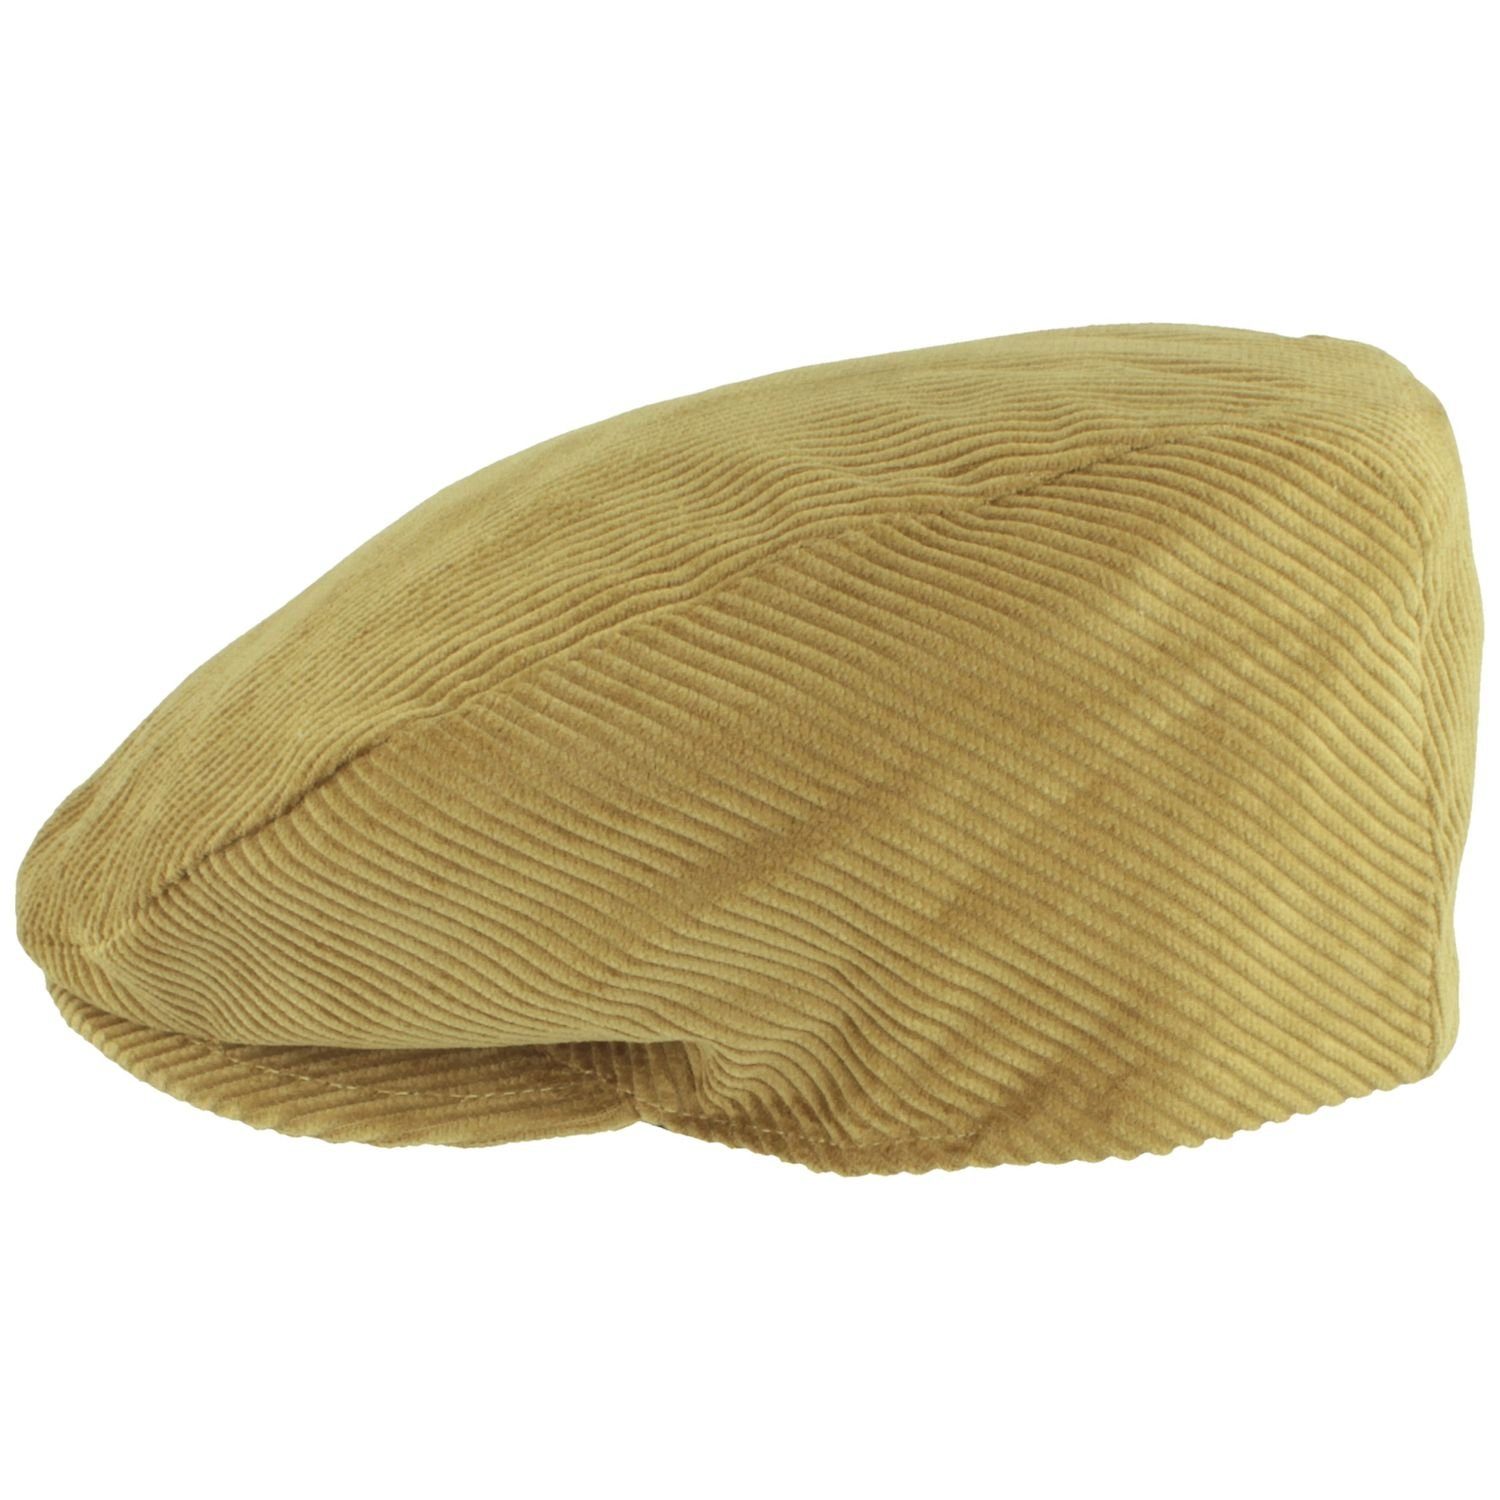 Baumwolle aus Breiter Schiebermütze Flatcap camel mit Cord-Streifen